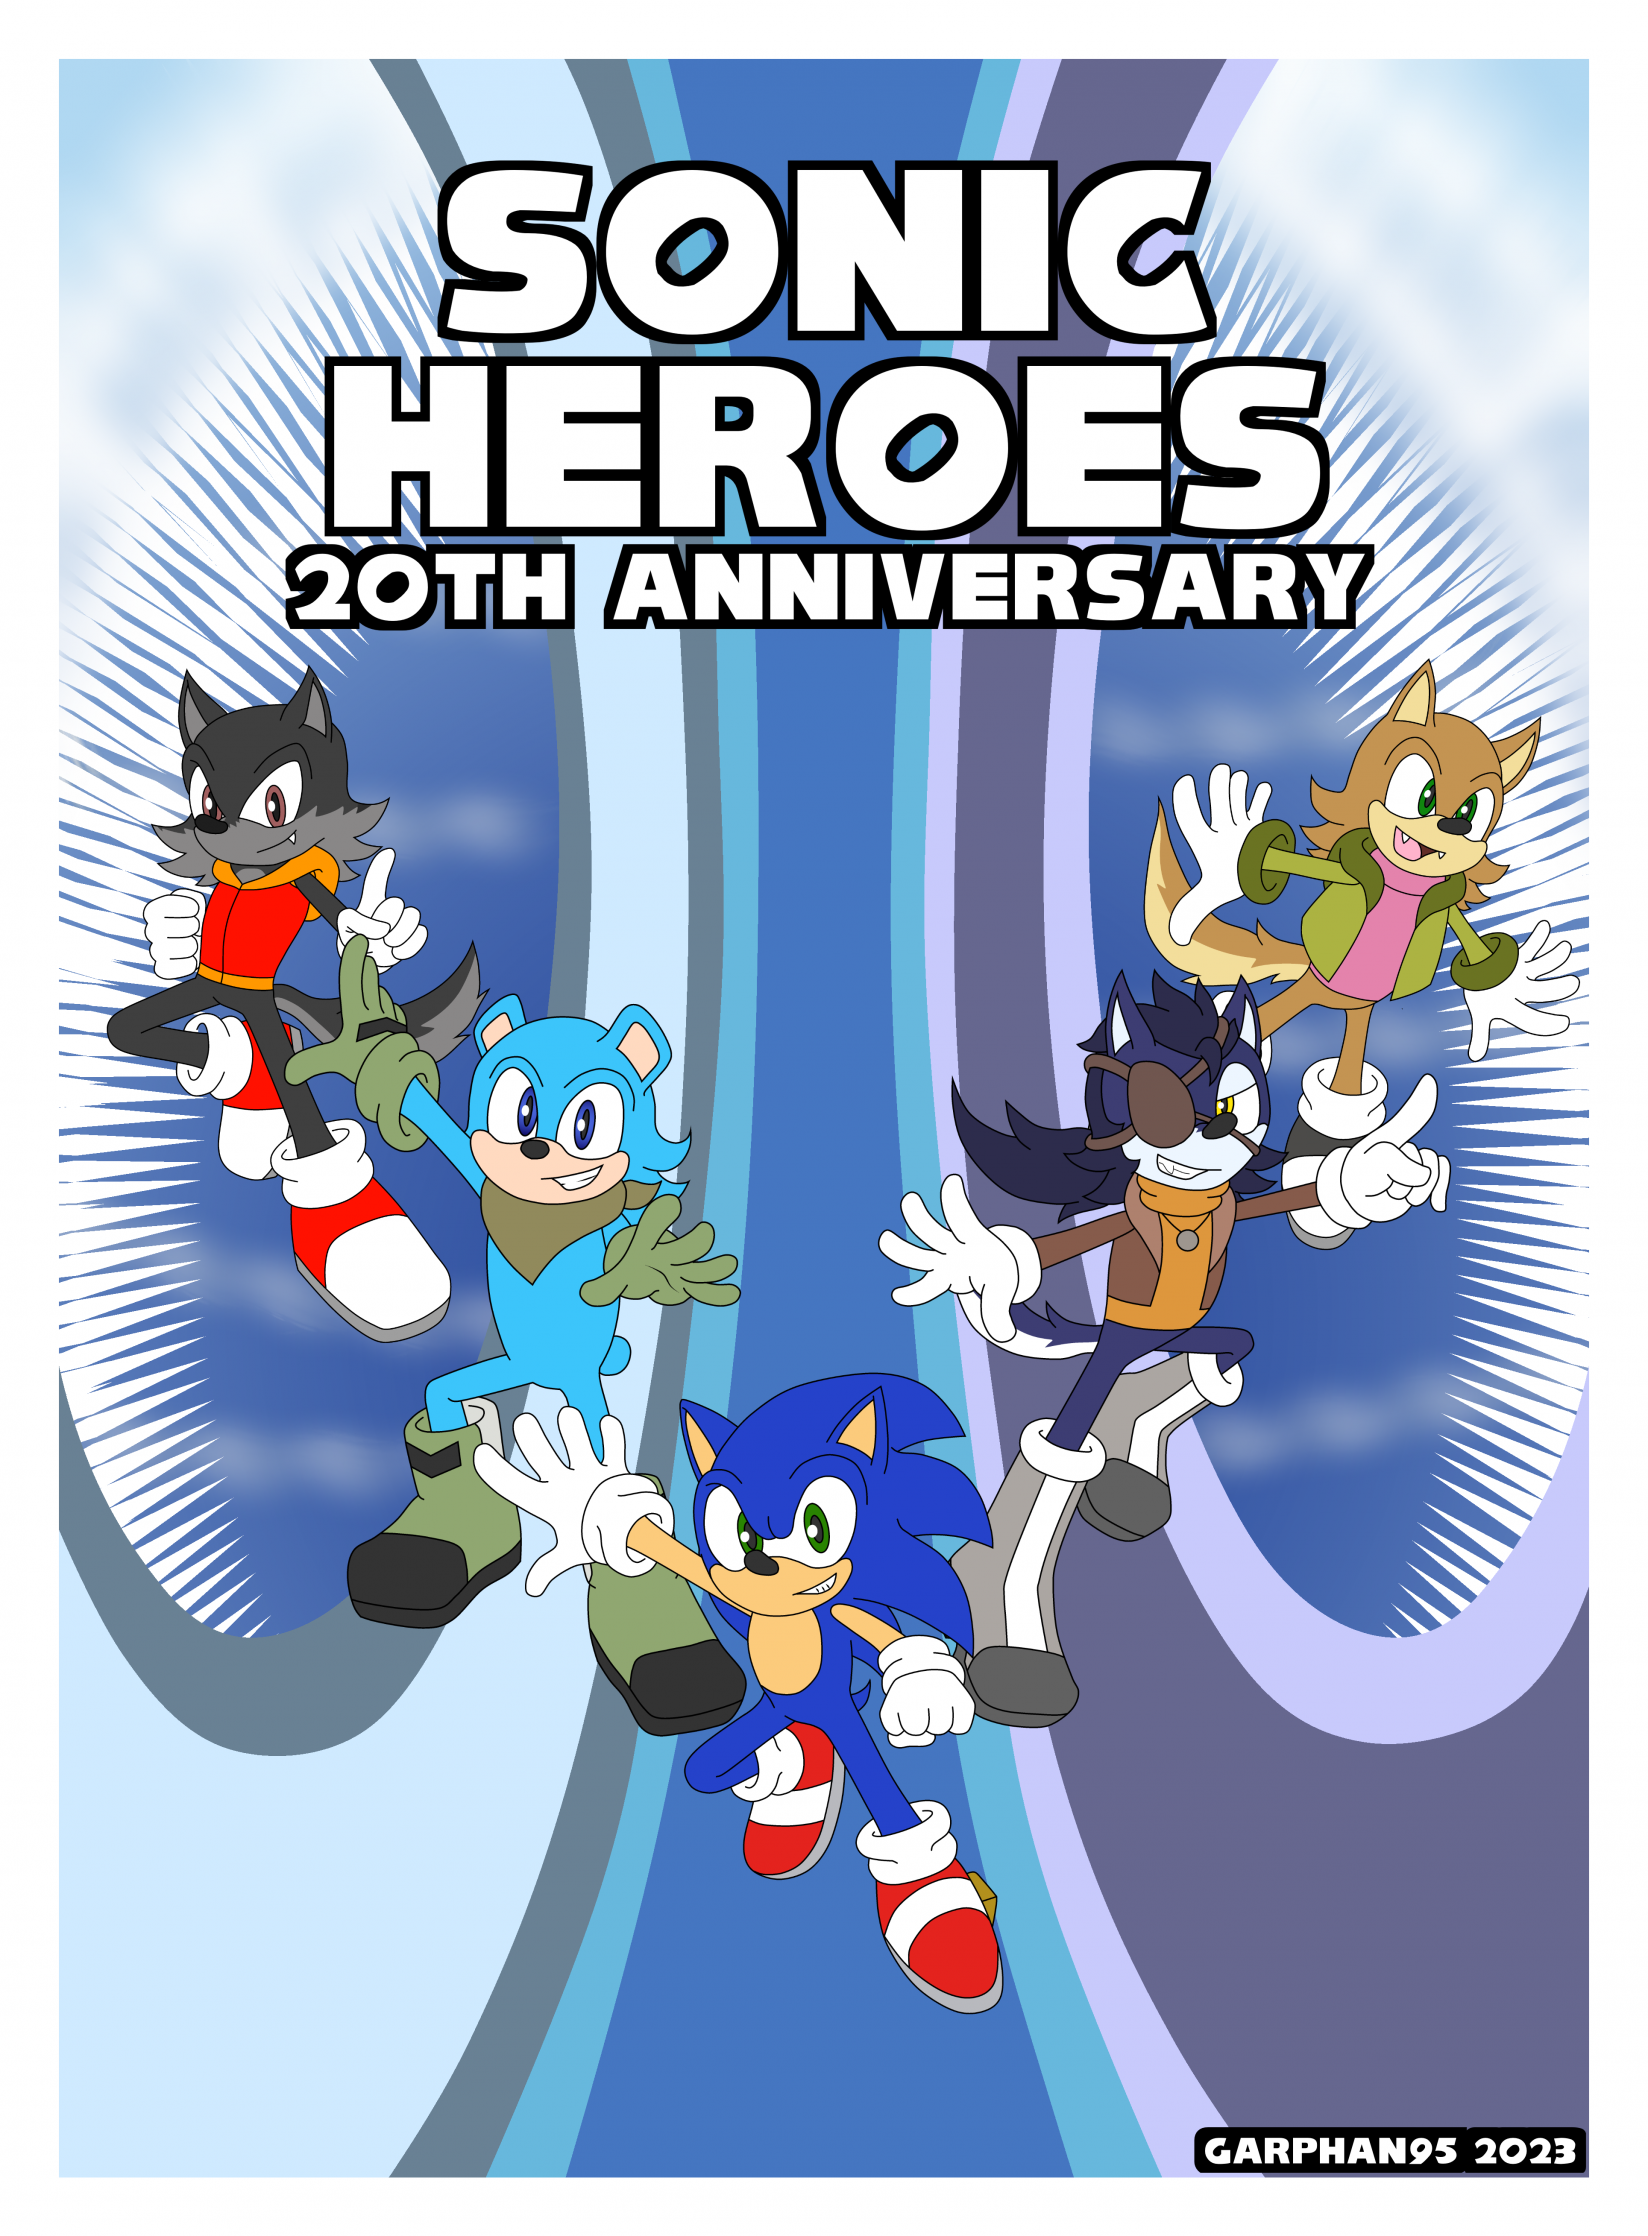 Sonic Heroes - Download